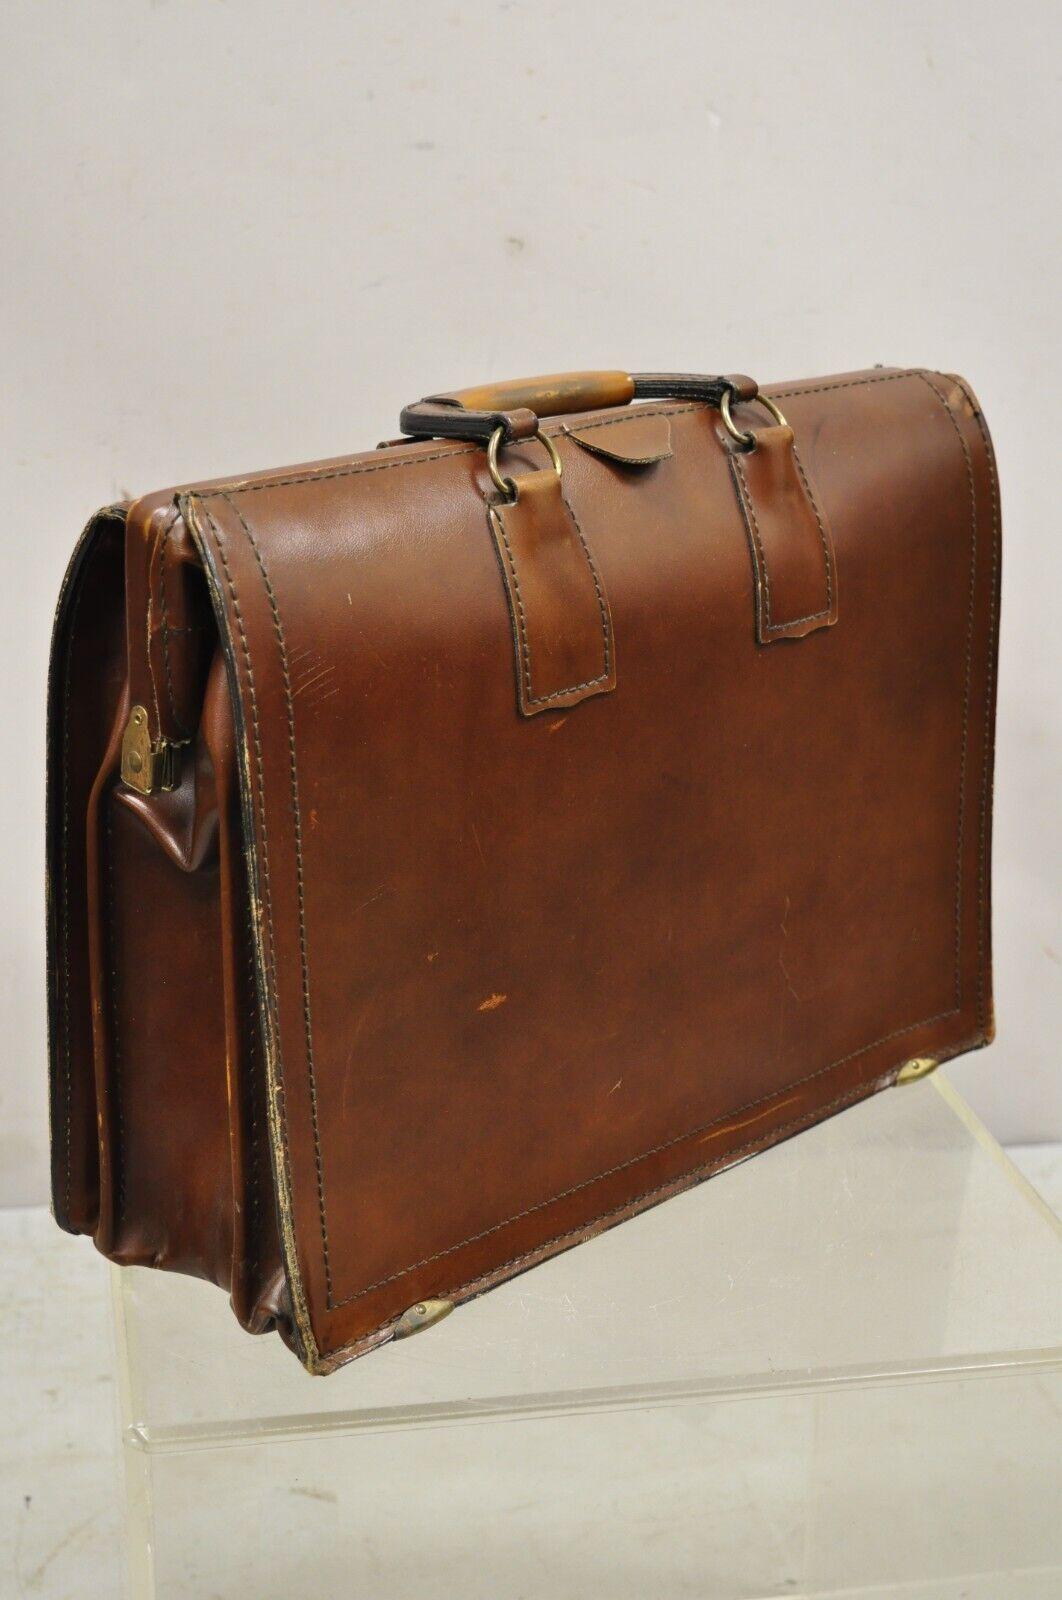 Vintage Mid-Century Modern saddle leather briefcase case by Lion Leather Prods. Die Tasche ist aus schönem, brüniertem, braunem Leder gefertigt, hat zwei Griffe, zwei seitliche Innenfächer, hochwertige amerikanische Handwerkskunst, ca. Mitte bis